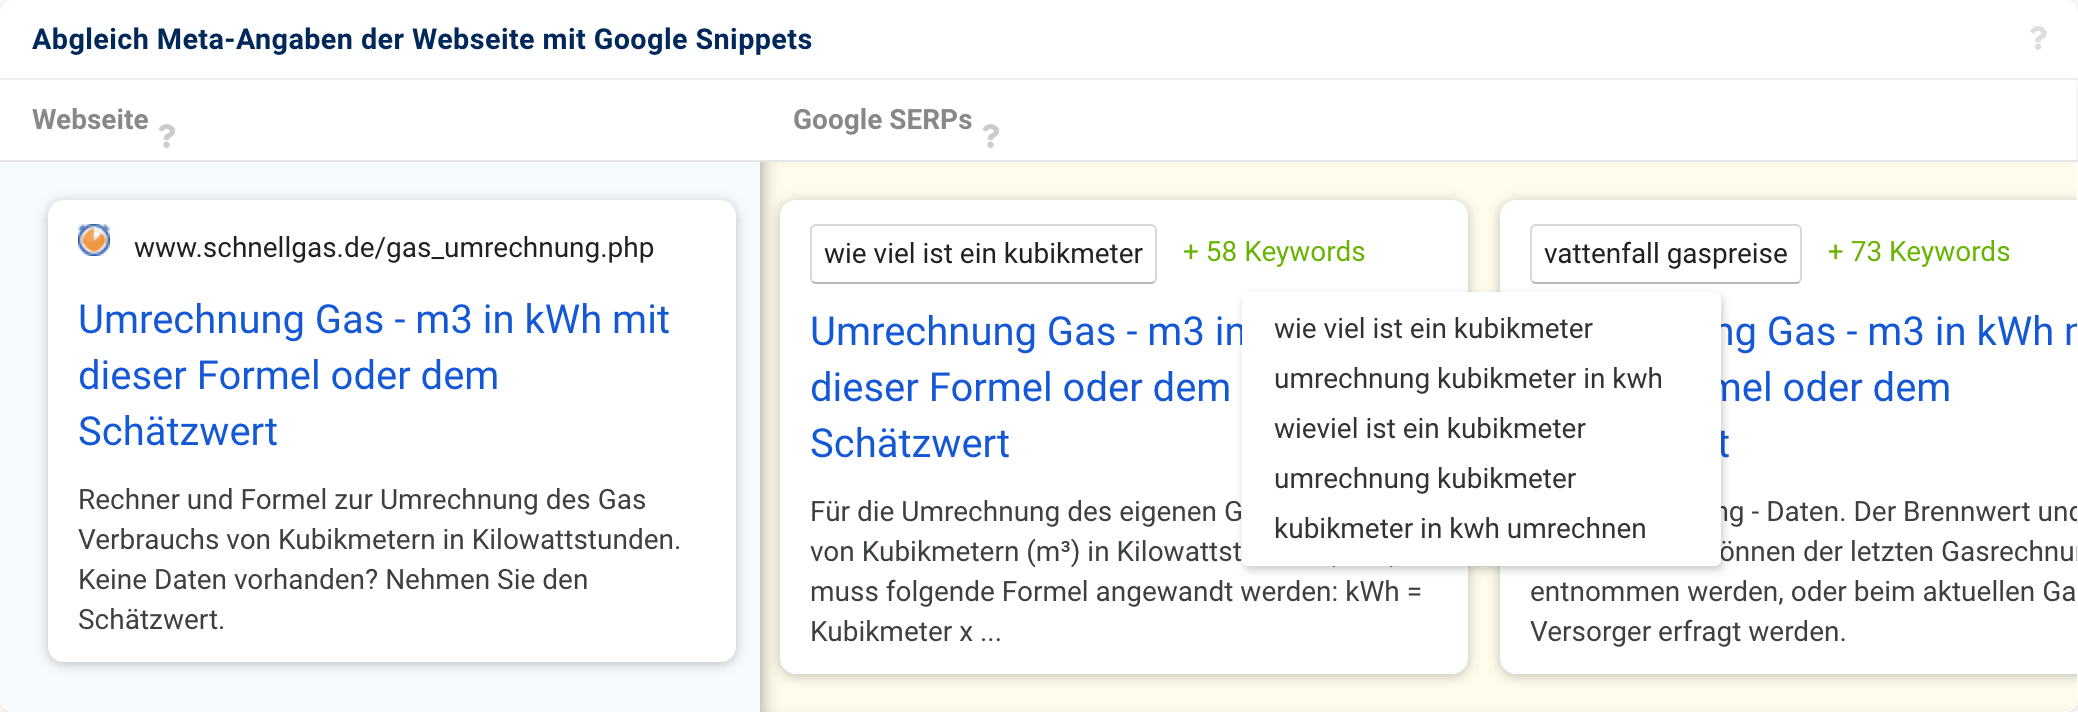 Die Domain schnellgas.de bietet auf einer Seite Informationen darüber, wie das Volumen von Gas in kWh umgerechnet wird. Mit dieser Seite rankt die Domain auch für allgemeine Umrechnungs-Keywords.